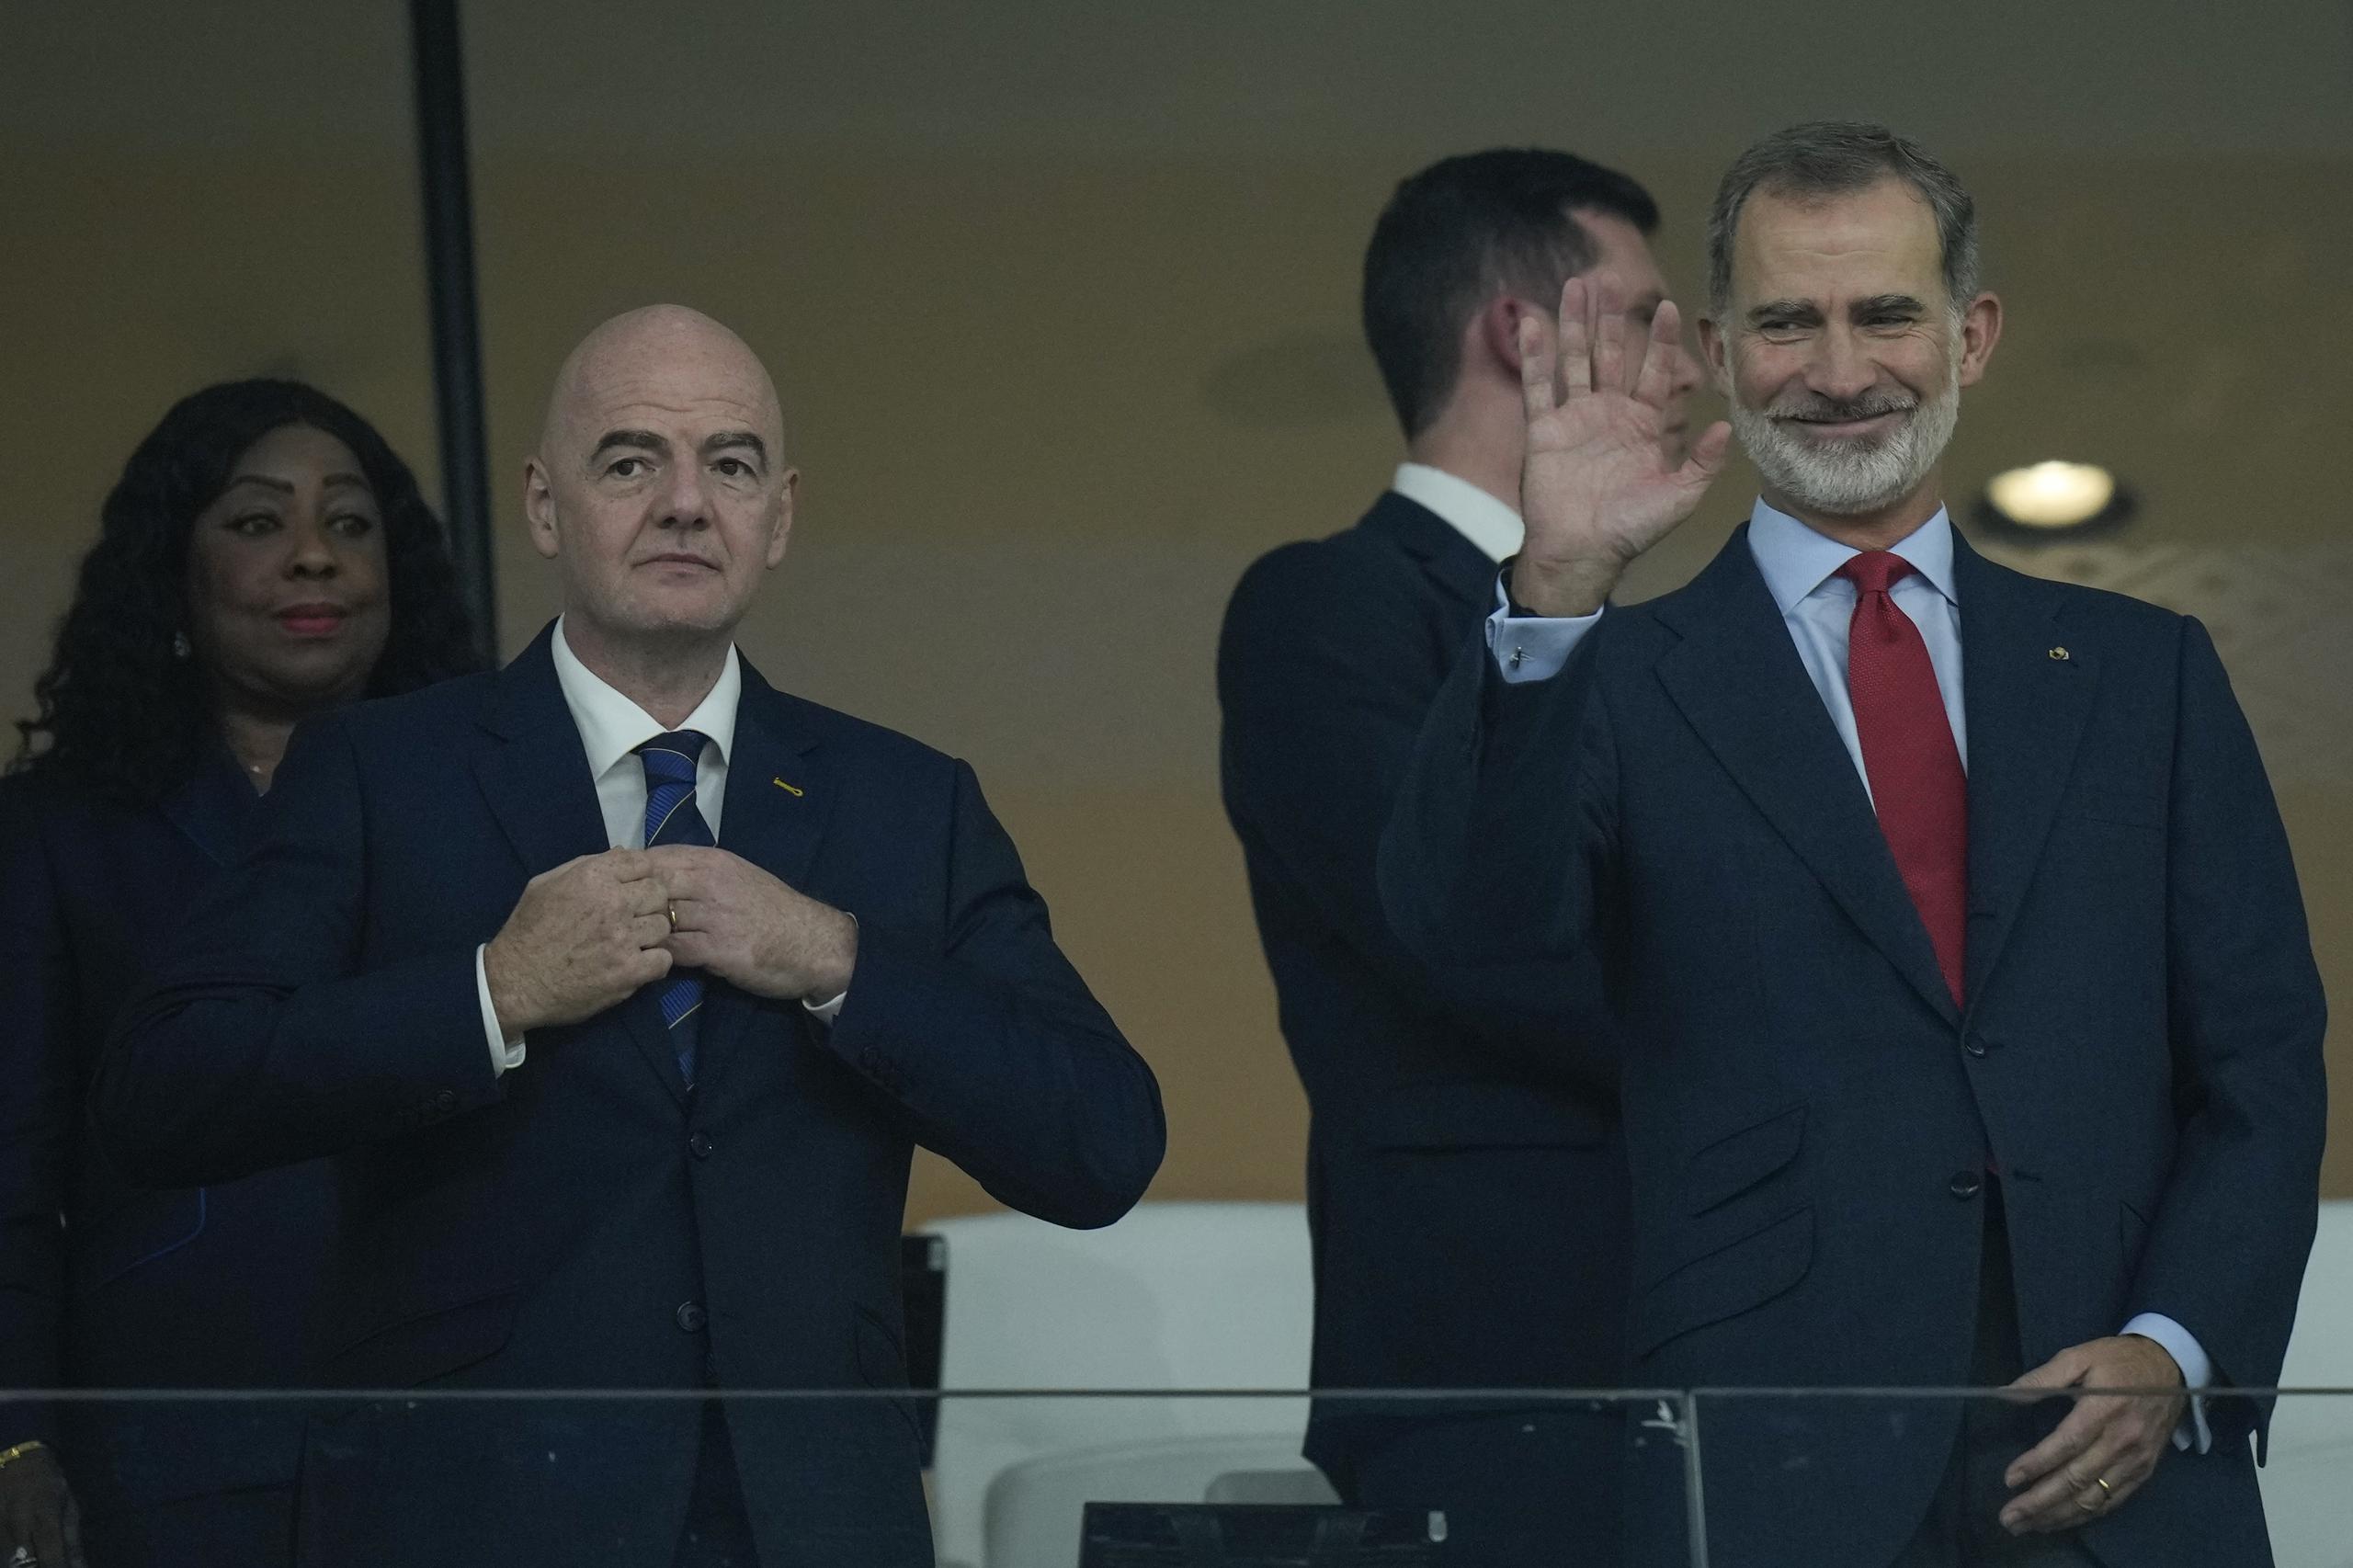 El rey Felipe VI (derecha), saluda junto al presidente de la FIFA, Gianni Infantino, durante el partido del Grupo E del Mundial que enfrentó a España y Costa Rica, en el estadio Al Thumama, en Doha, Qatar, el 23 de noviembre de 2022. (AP Foto/Francisco Seco)